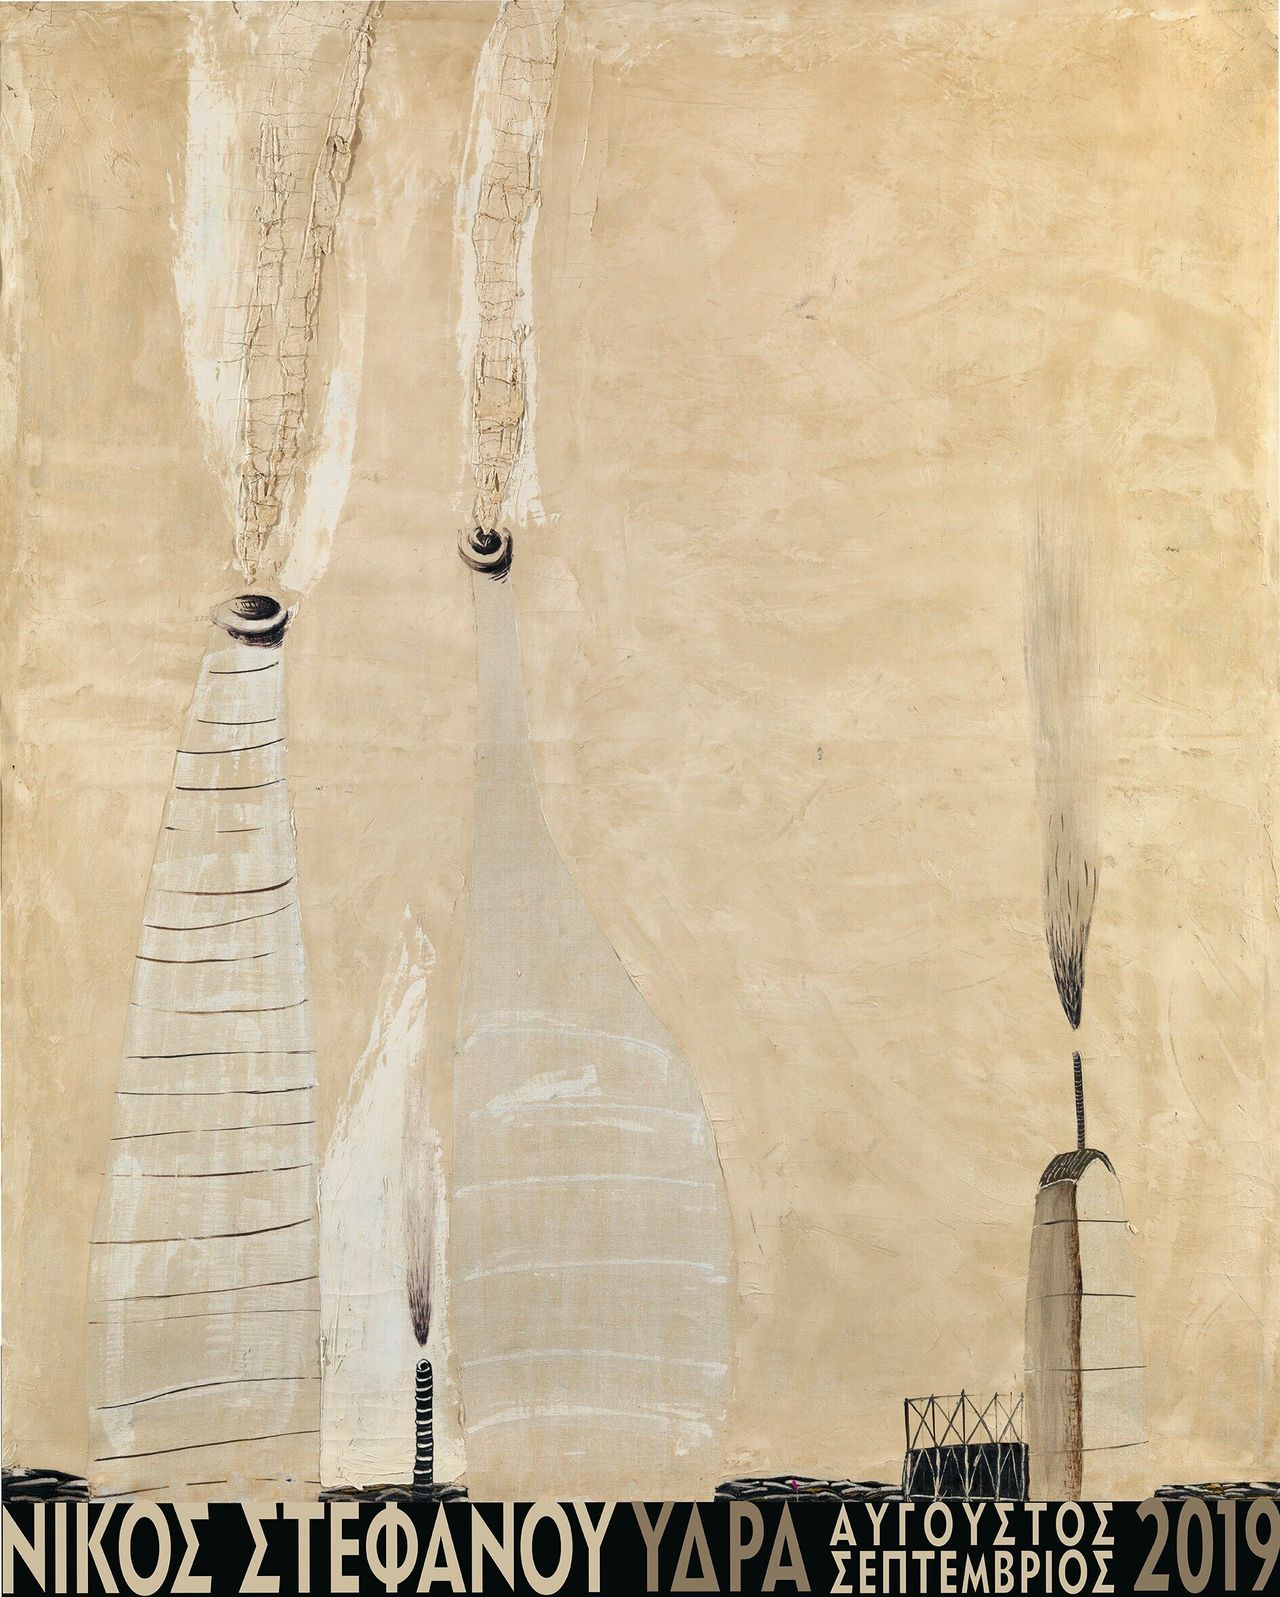 «Οι καπνοί», 1963, λάδι σε καμβά, 140 x 120 cm, συλλογή Αλέξη Βερούκα